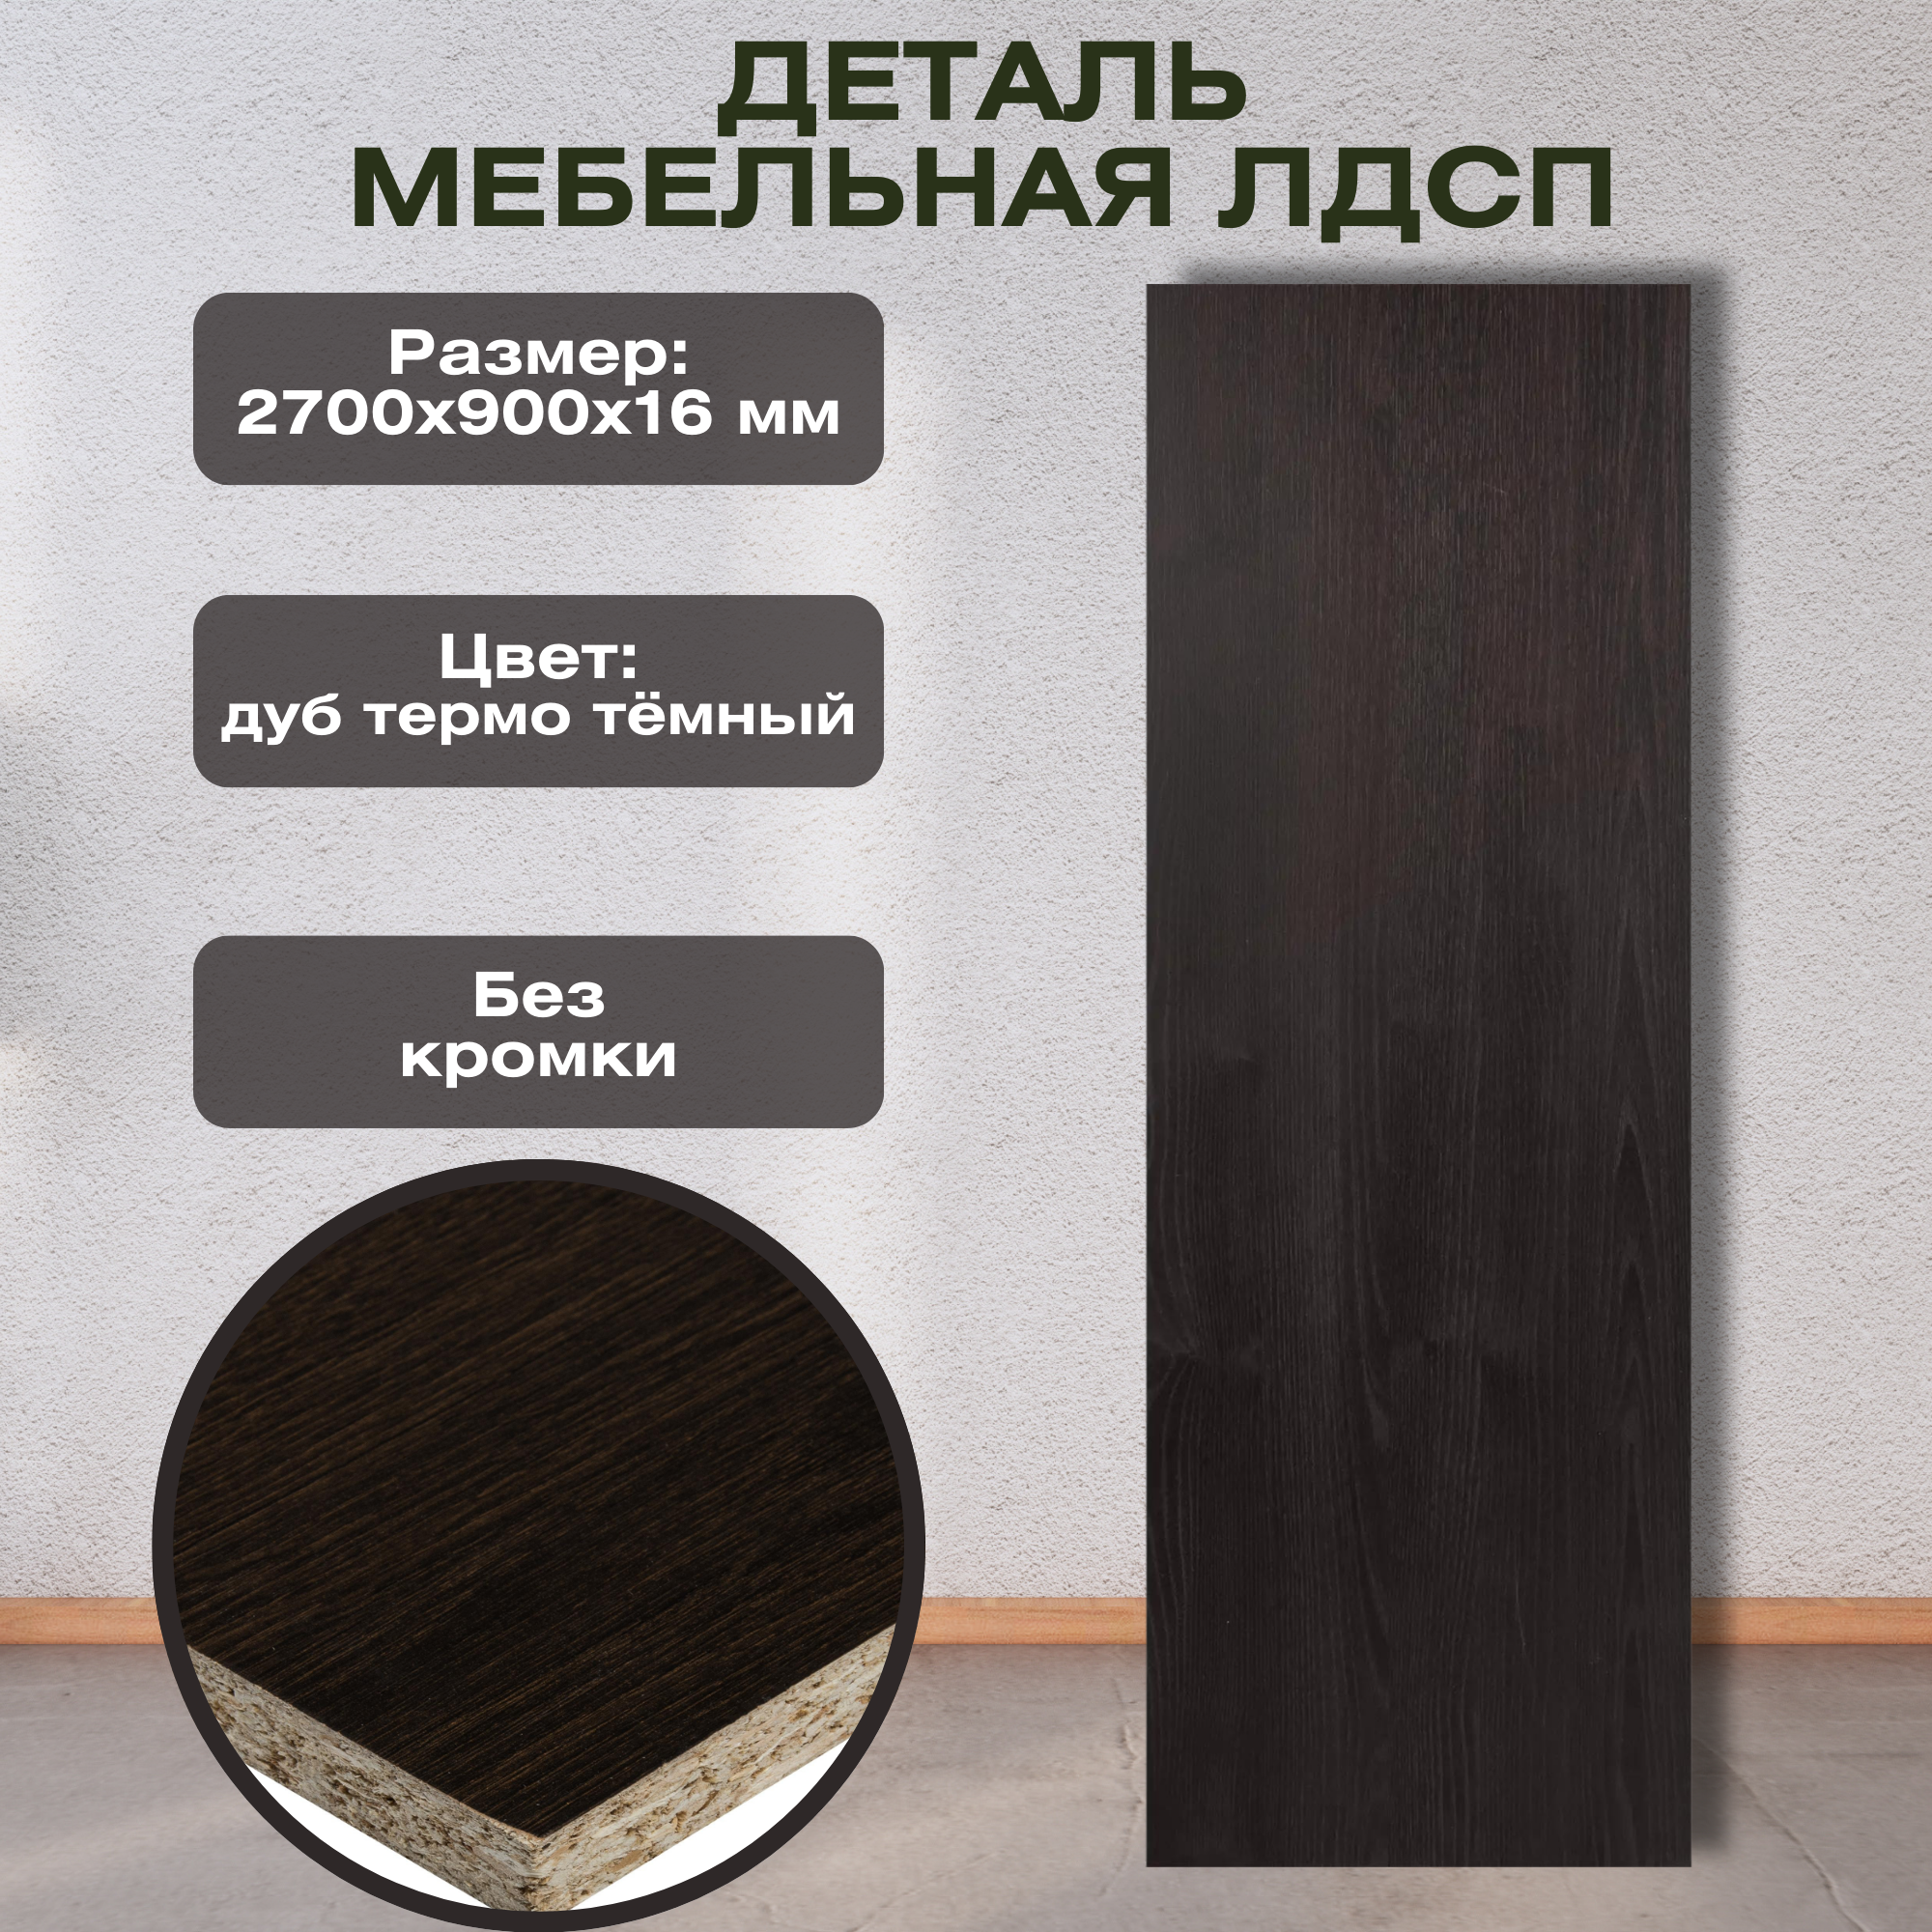 Деталь мебельная 2700x900x16 мм ЛДСП дуб термо тёмный без кромки с имитацией поверхности древесины.